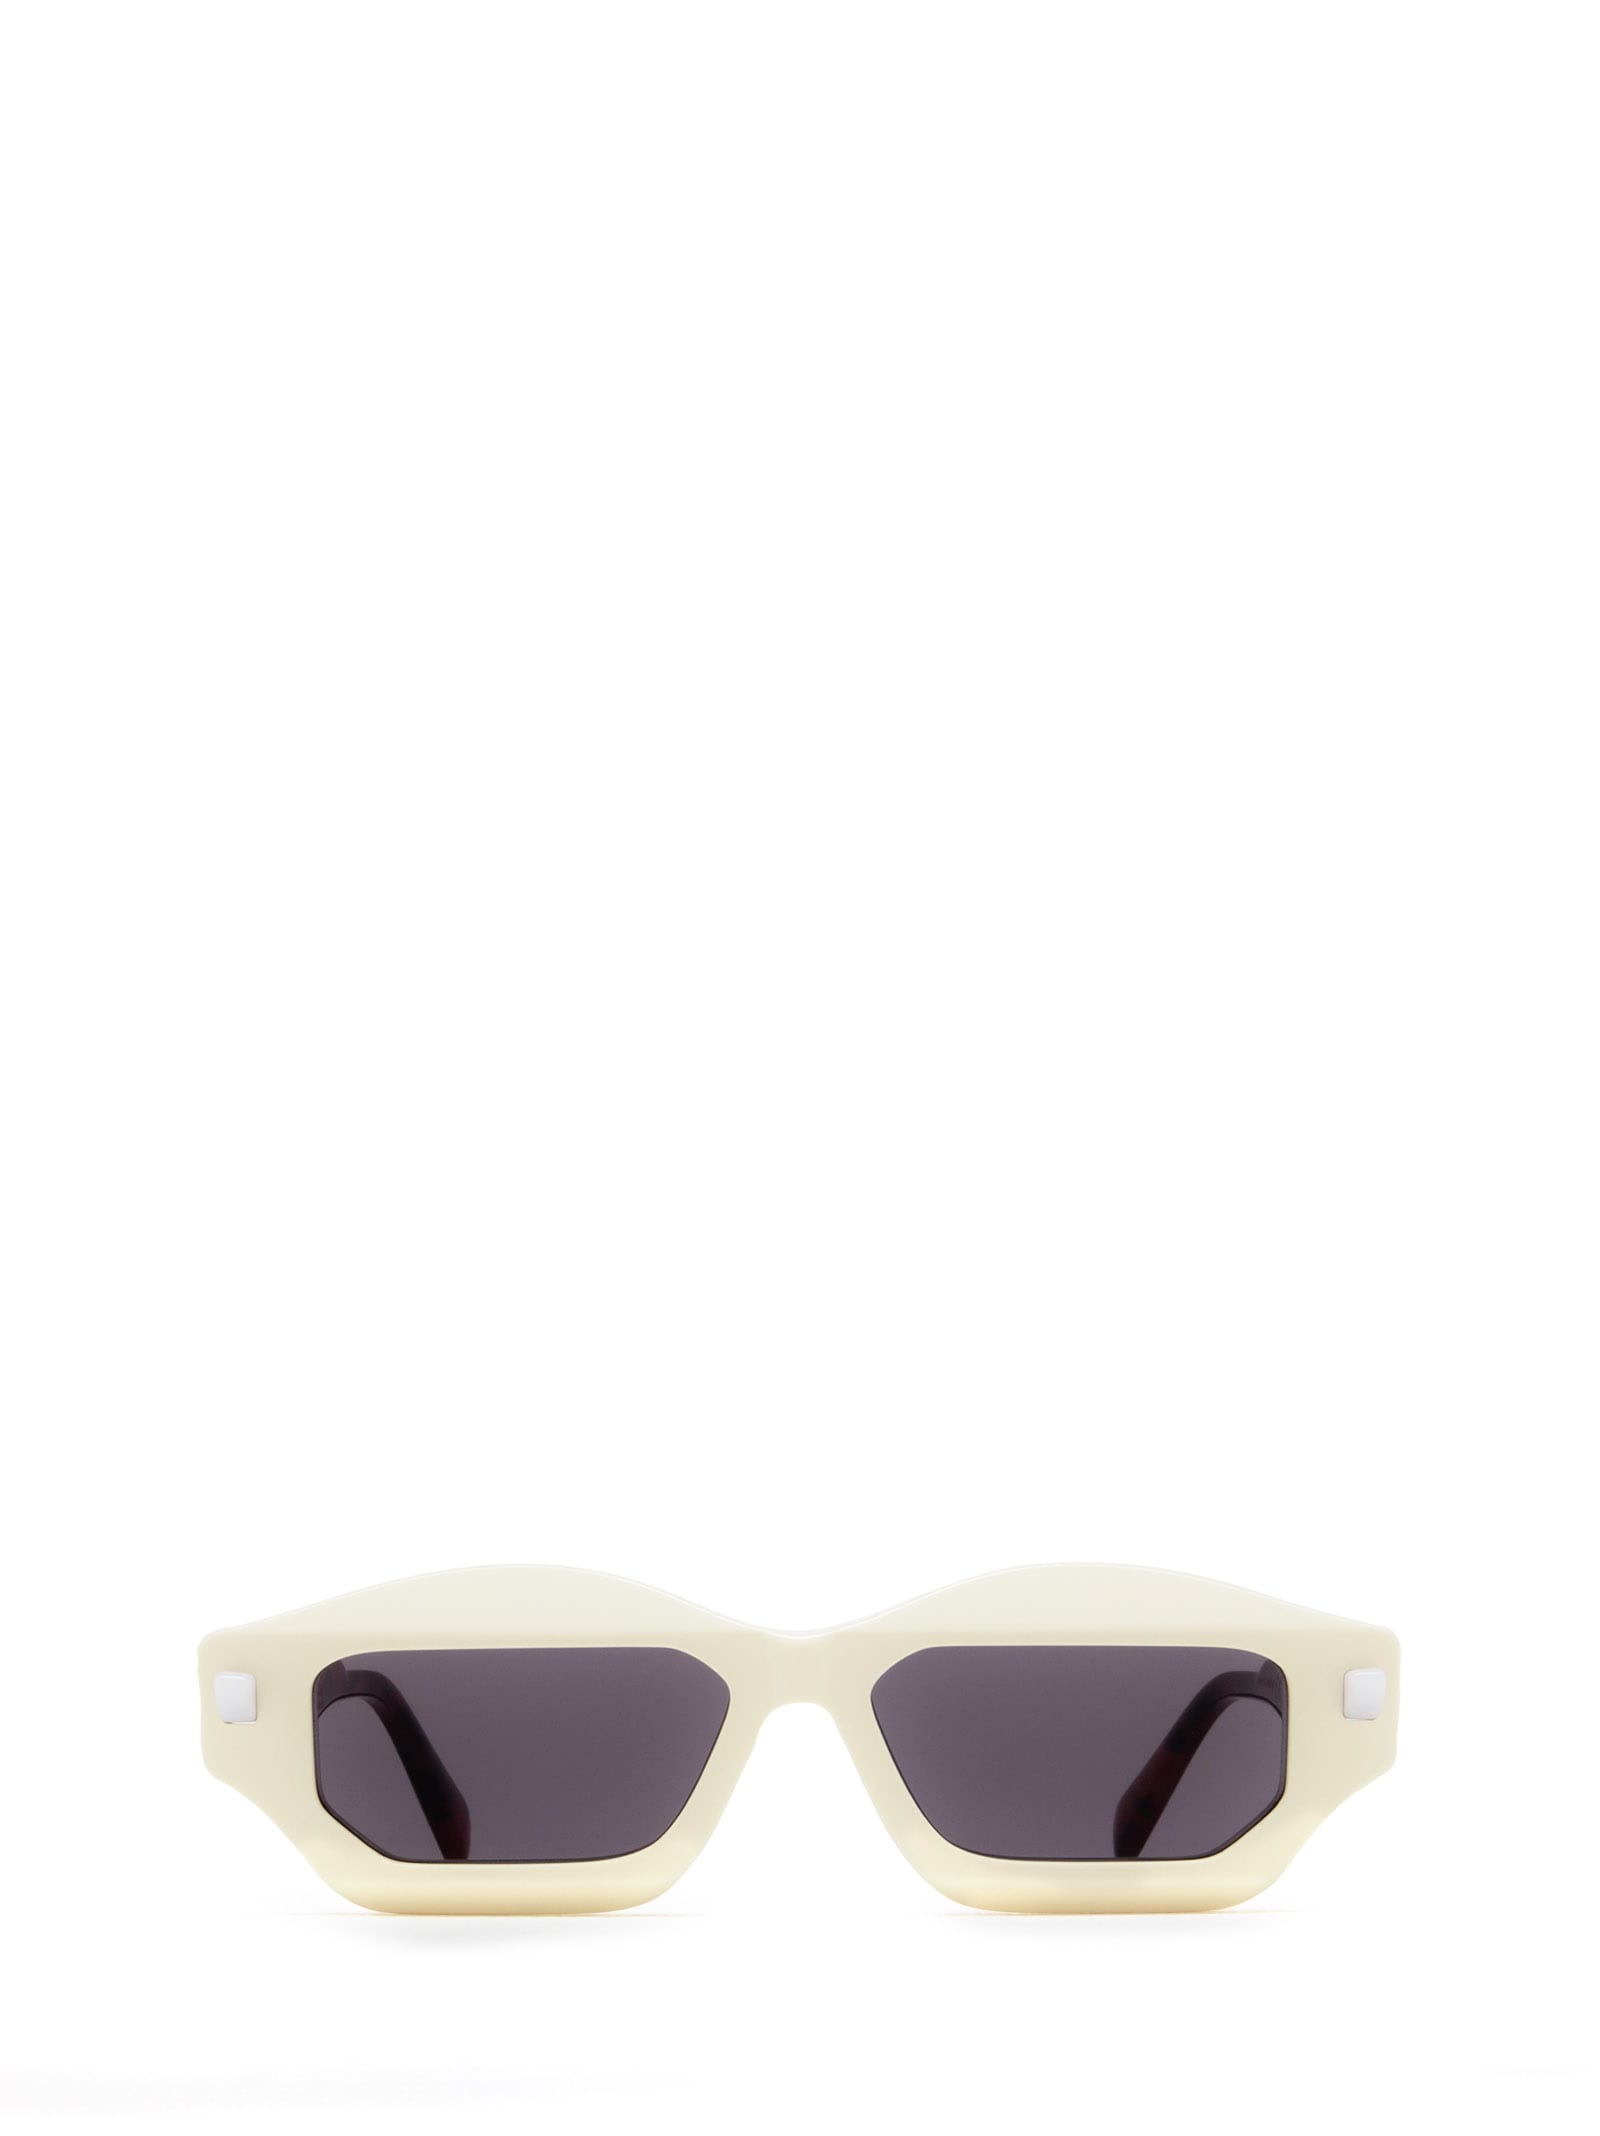 Kuboraum Q6 Ivory & Havana Red Sunglasses